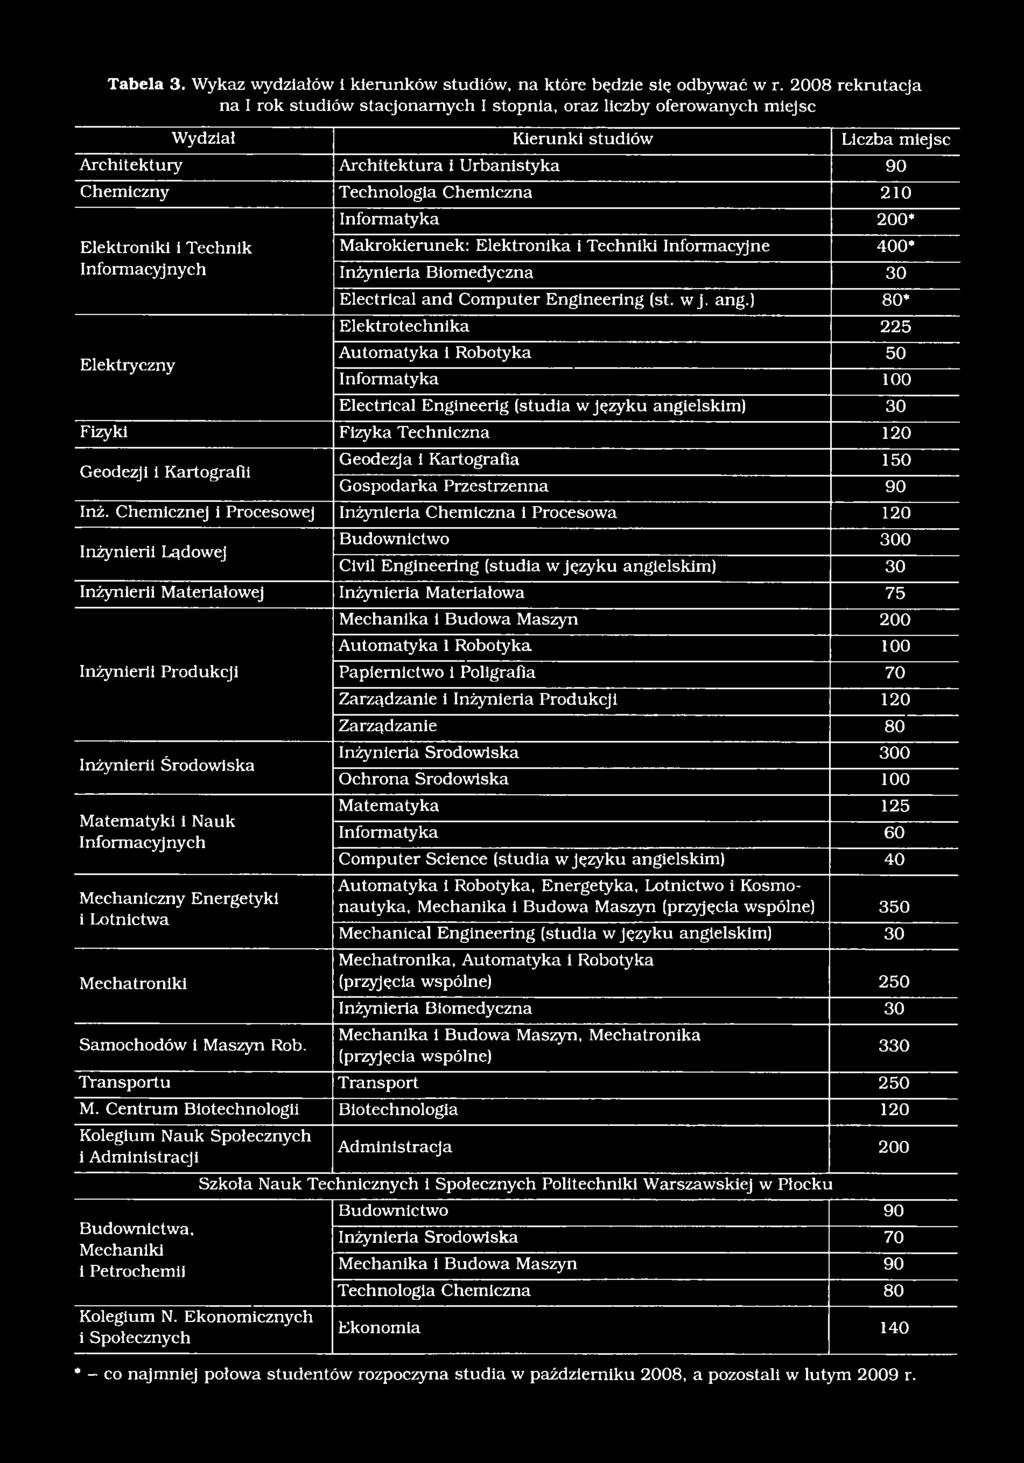 Chemiczna 210 Informatyka 200* Elektroniki i Technik Makrokierunek: Elektronika i Techniki Informacyjne 400* Informacyj nych Inżynieria Biomedyczna 30 Elektryczny Electrical and Computer Engineering